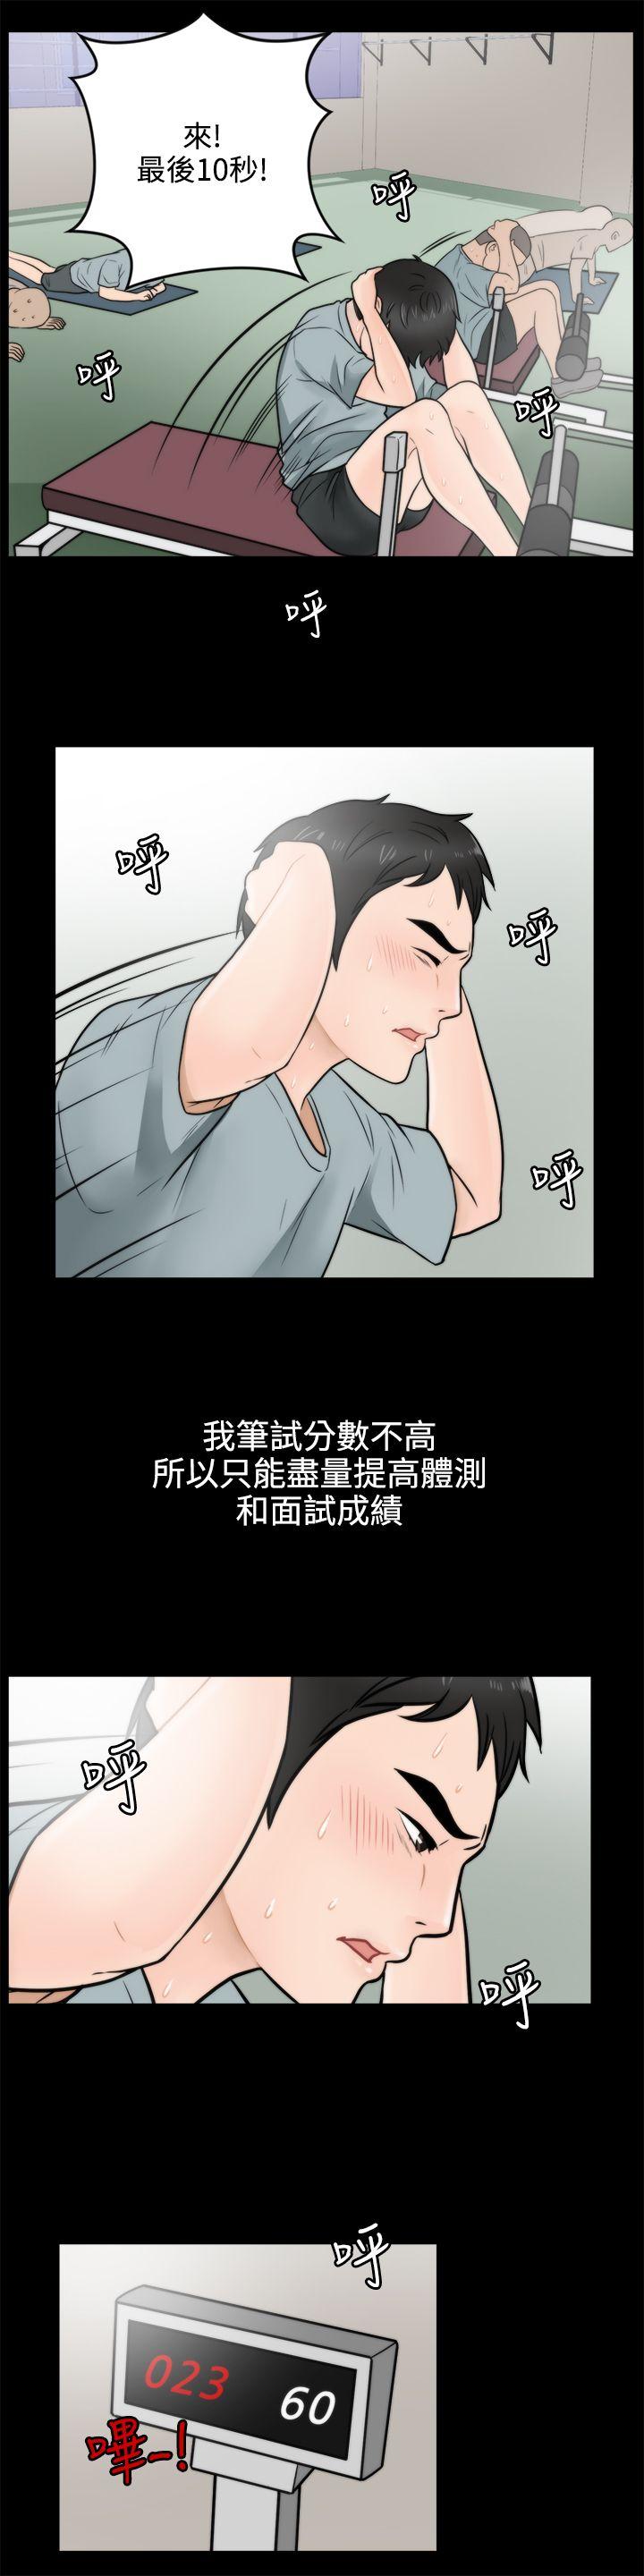 韩国污漫画 偷偷愛 第3话 13